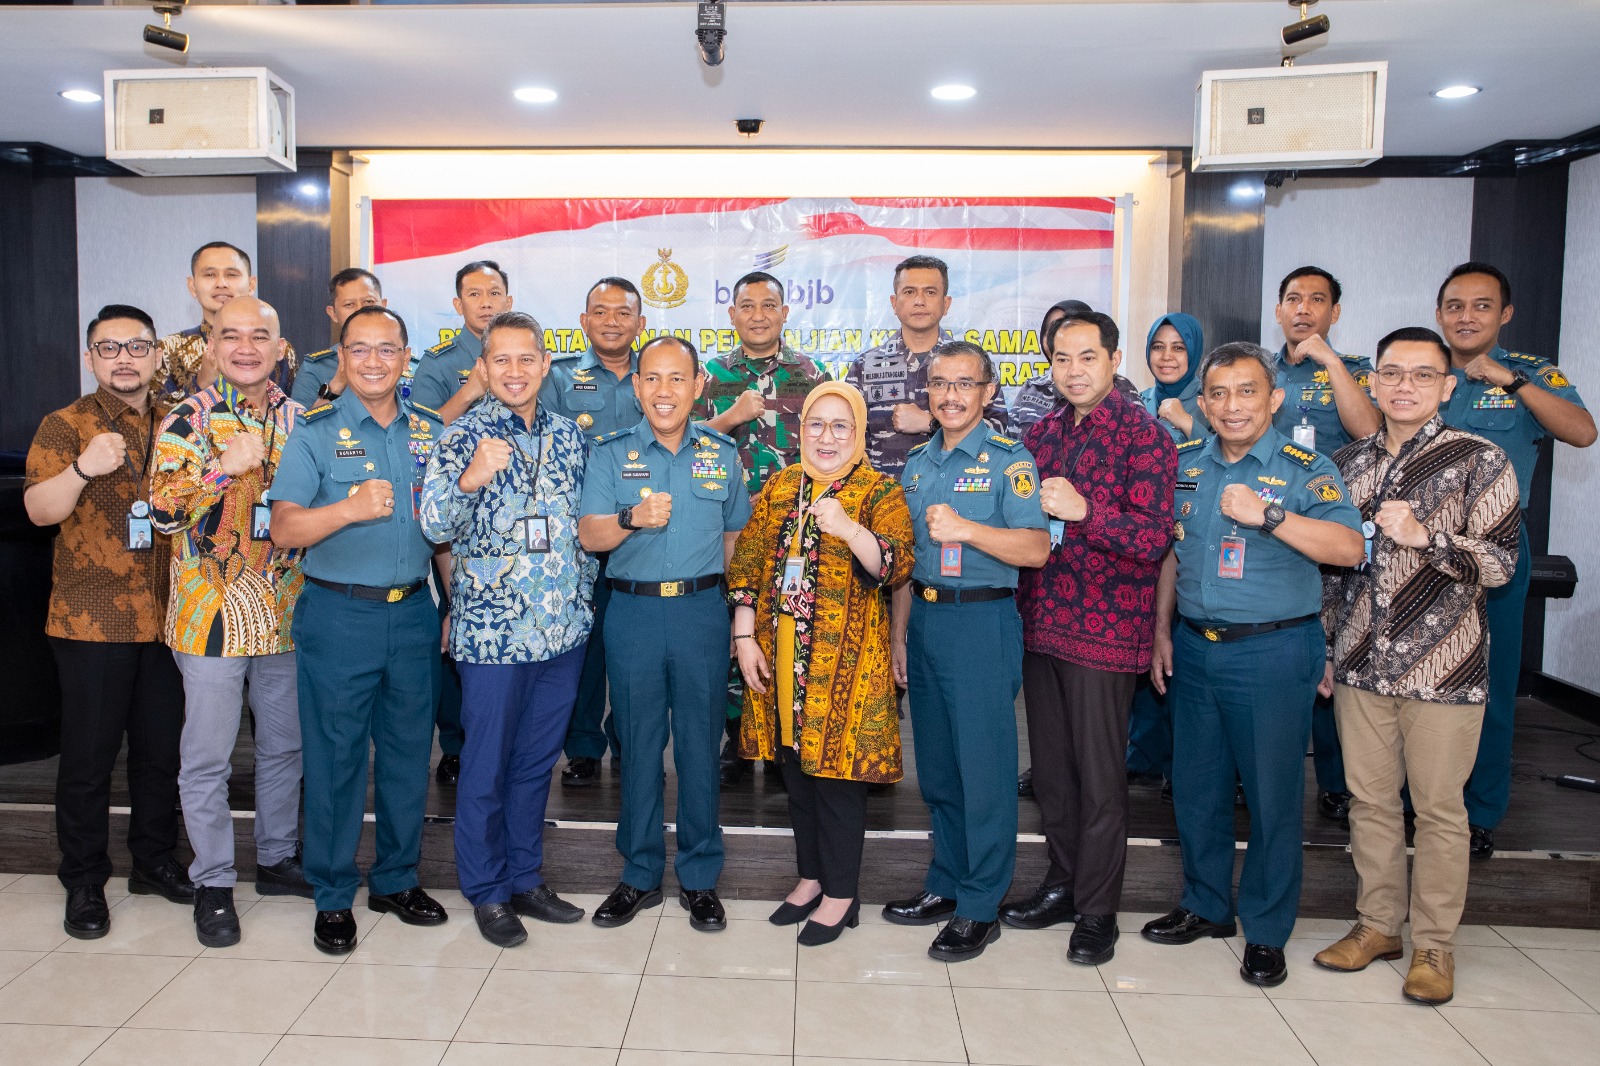 Perkuat Sinergitas, bank bjb Tandatangani PKS Dengan TNI AL